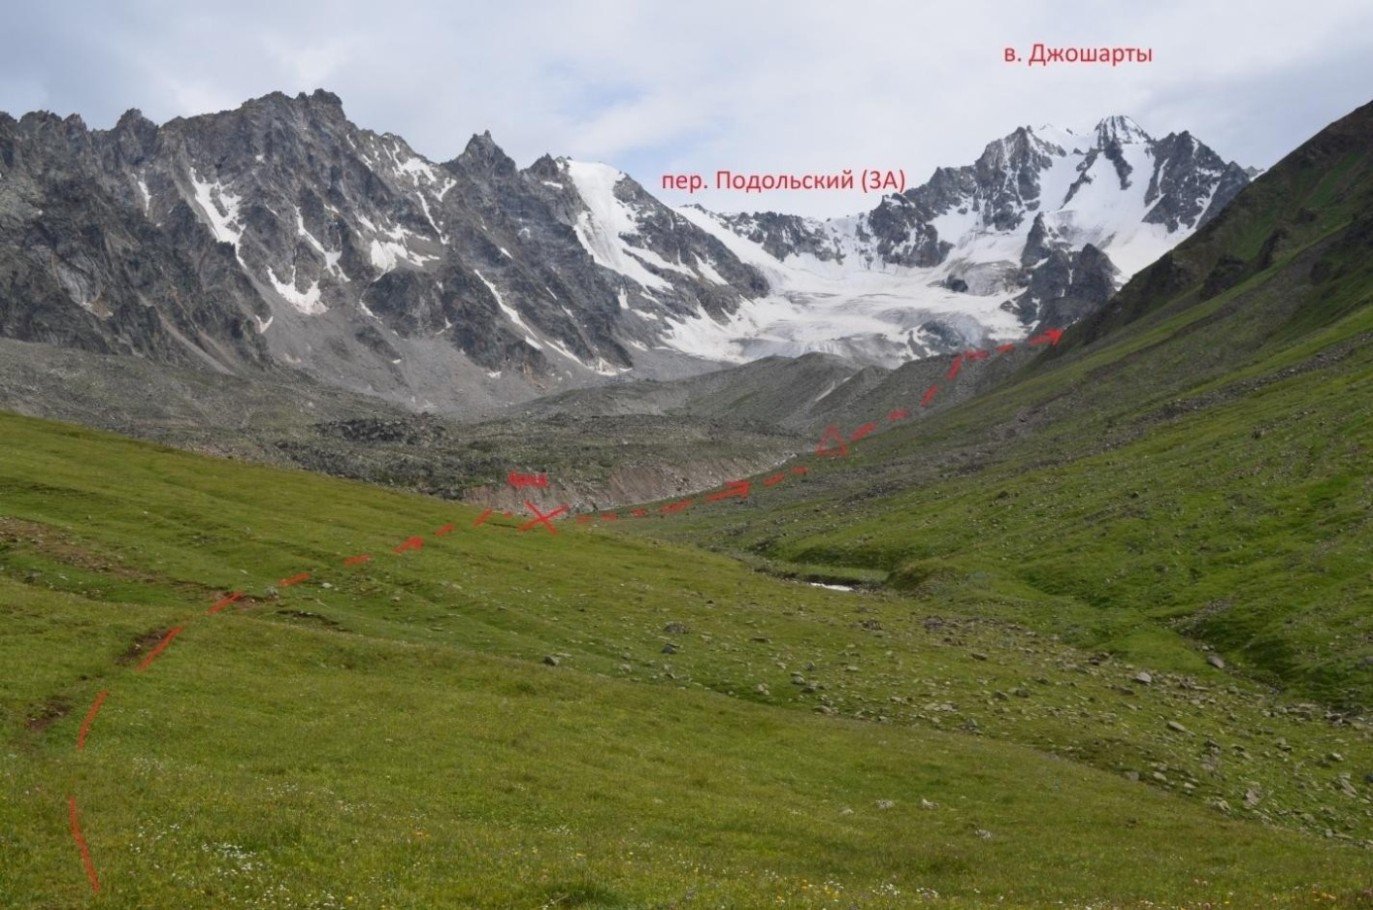 Отчет о горном туристском спортивном маршруте 3 к.с. по Ц. Кавказу (Приэльбрусье)